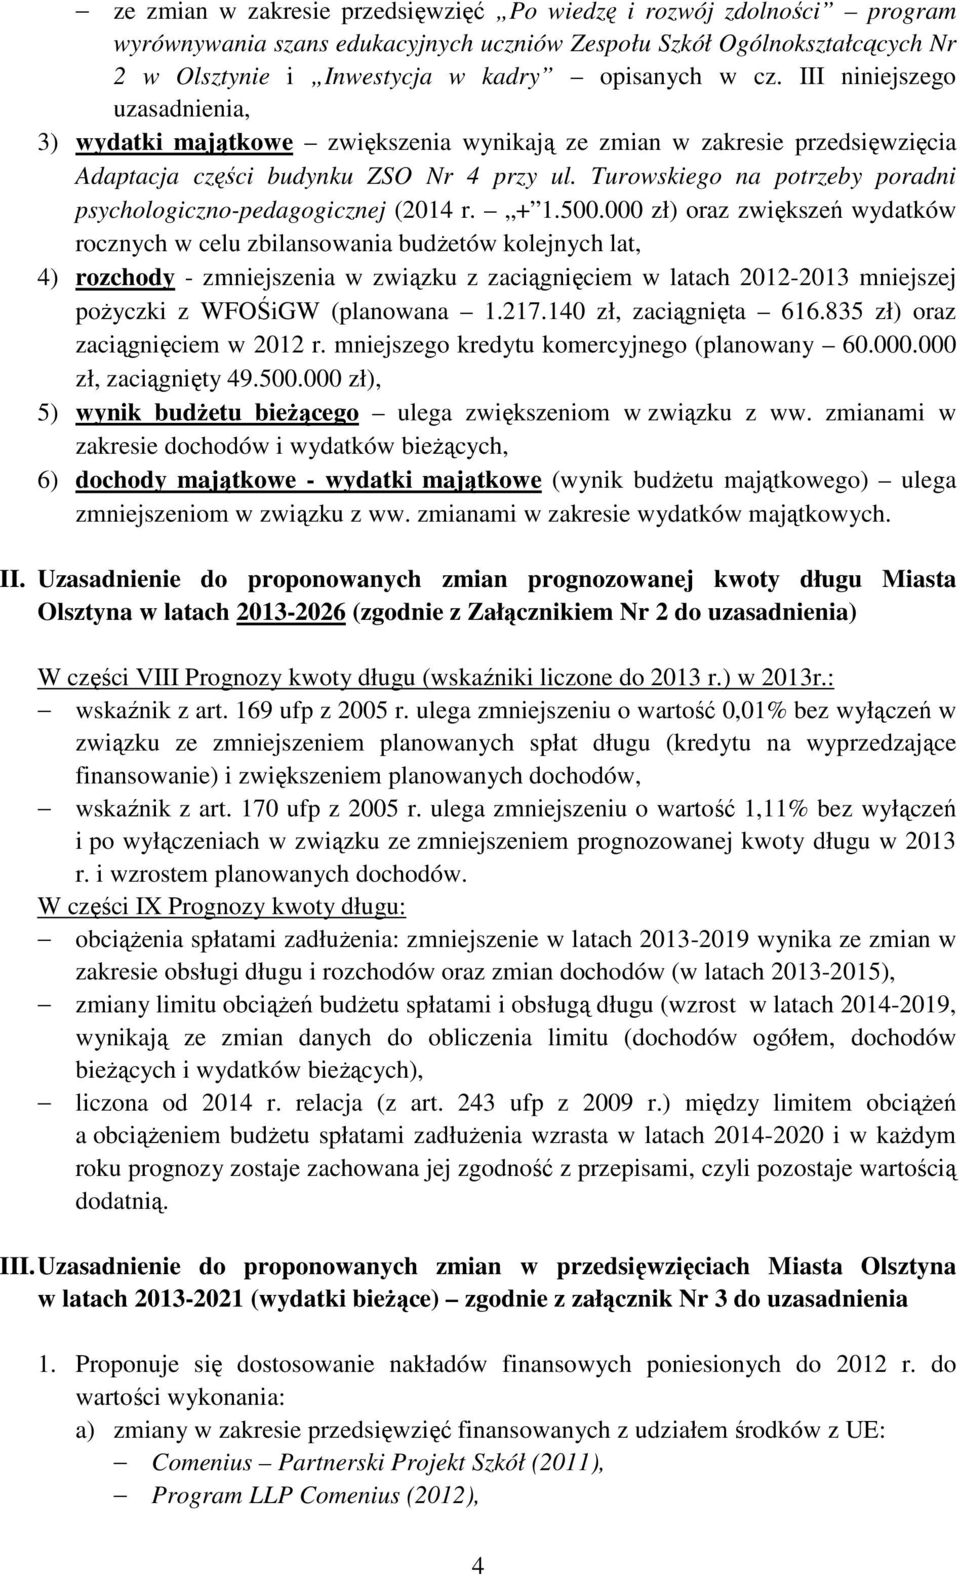 Turowskiego na potrzeby poradni psychologiczno-pedagogicznej (2014 r. + 1.500.